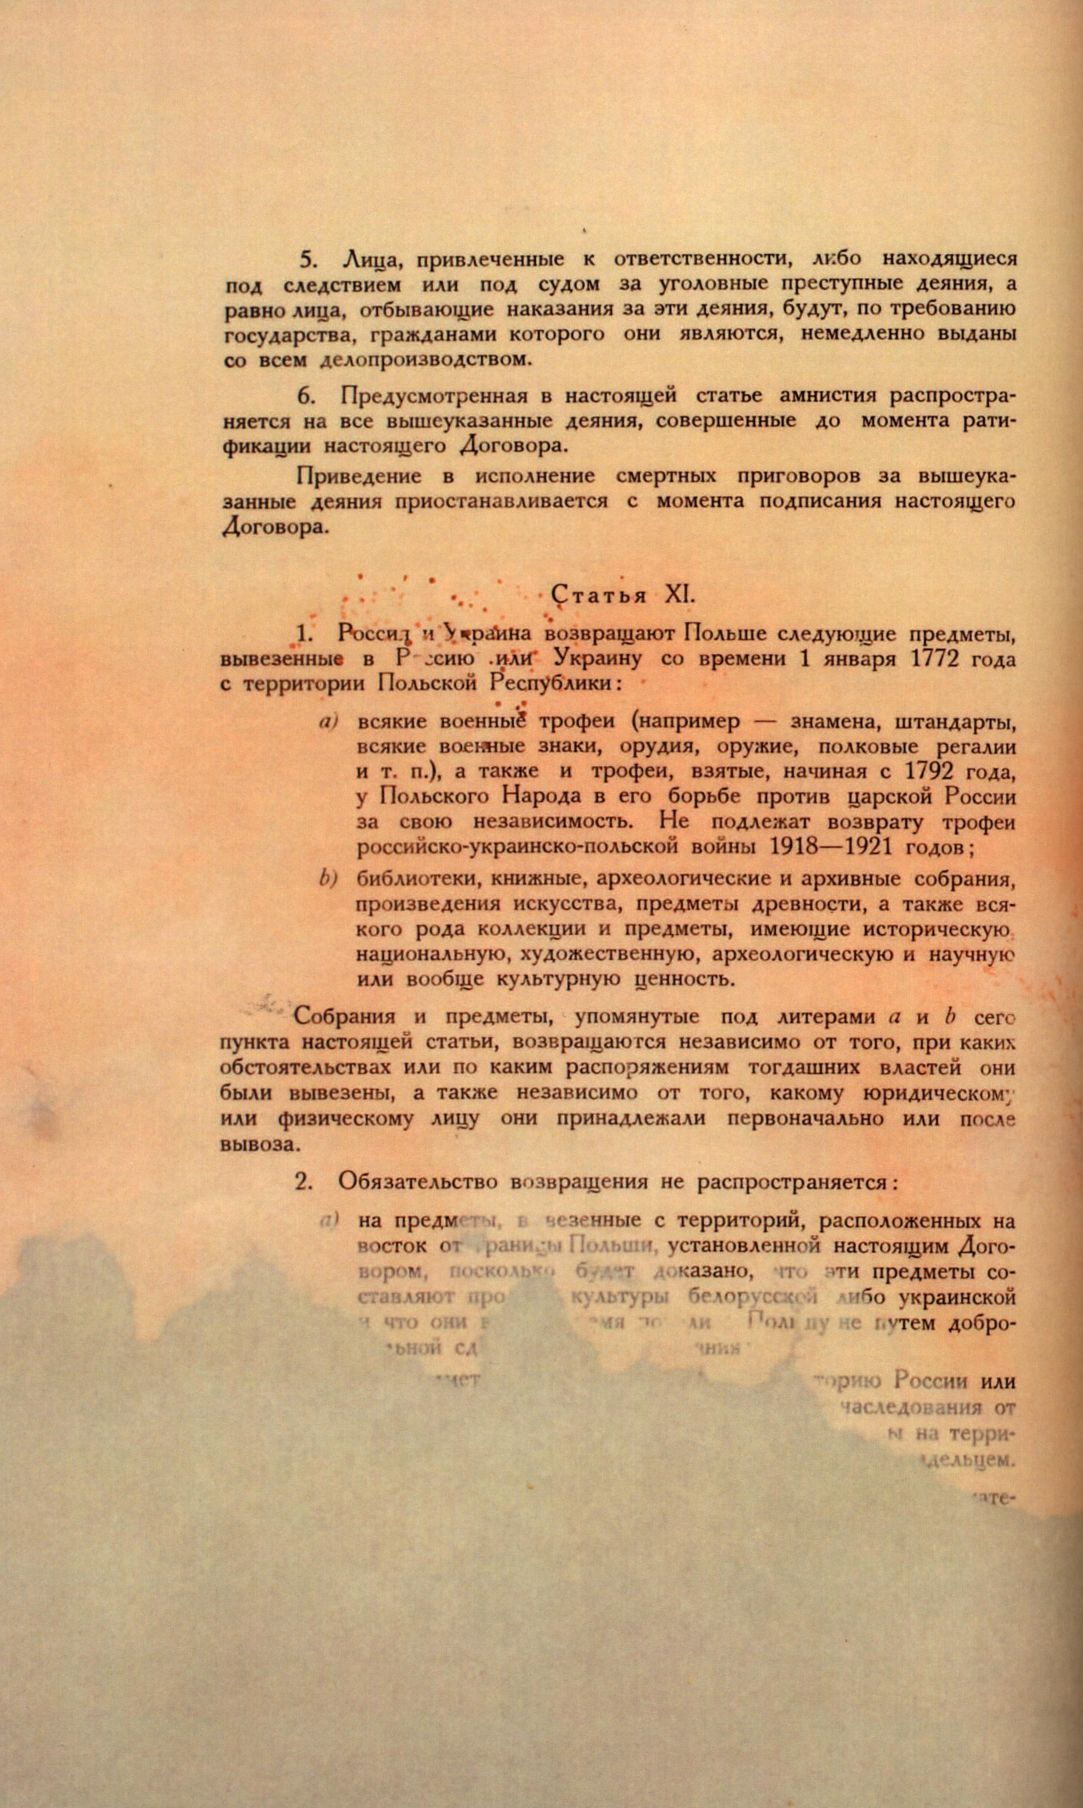 Traktat Pokoju między Polską a Rosją i Ukrainą podpisany w Rydze dnia 18 marca 1921 roku, s. 76, MSZ, sygn. 6739.